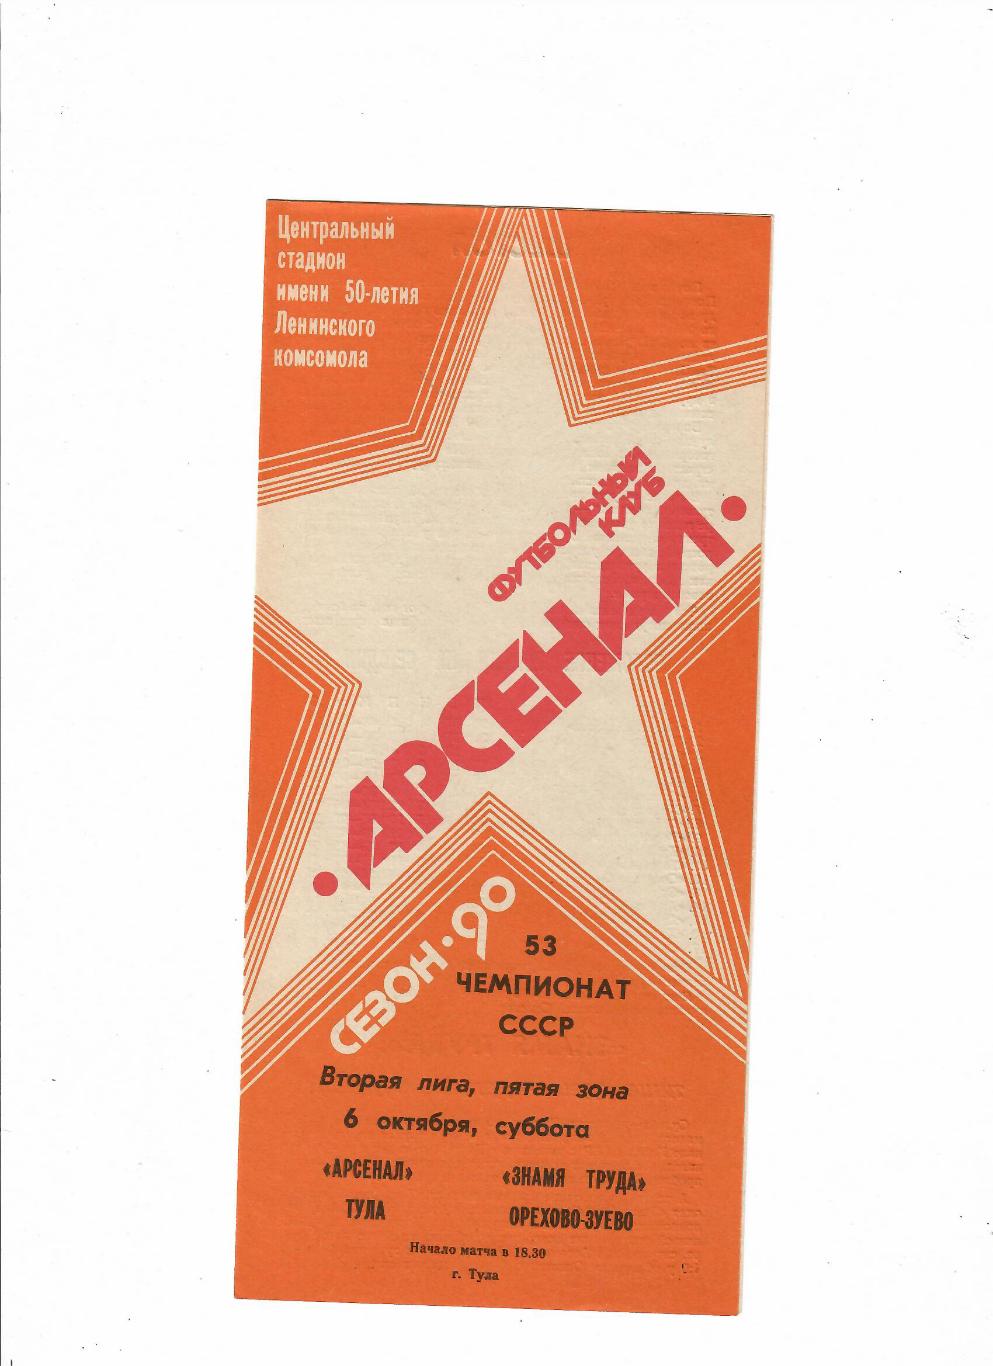 Арсенал Тула-Знамя труда Орехово-Зуево 1990